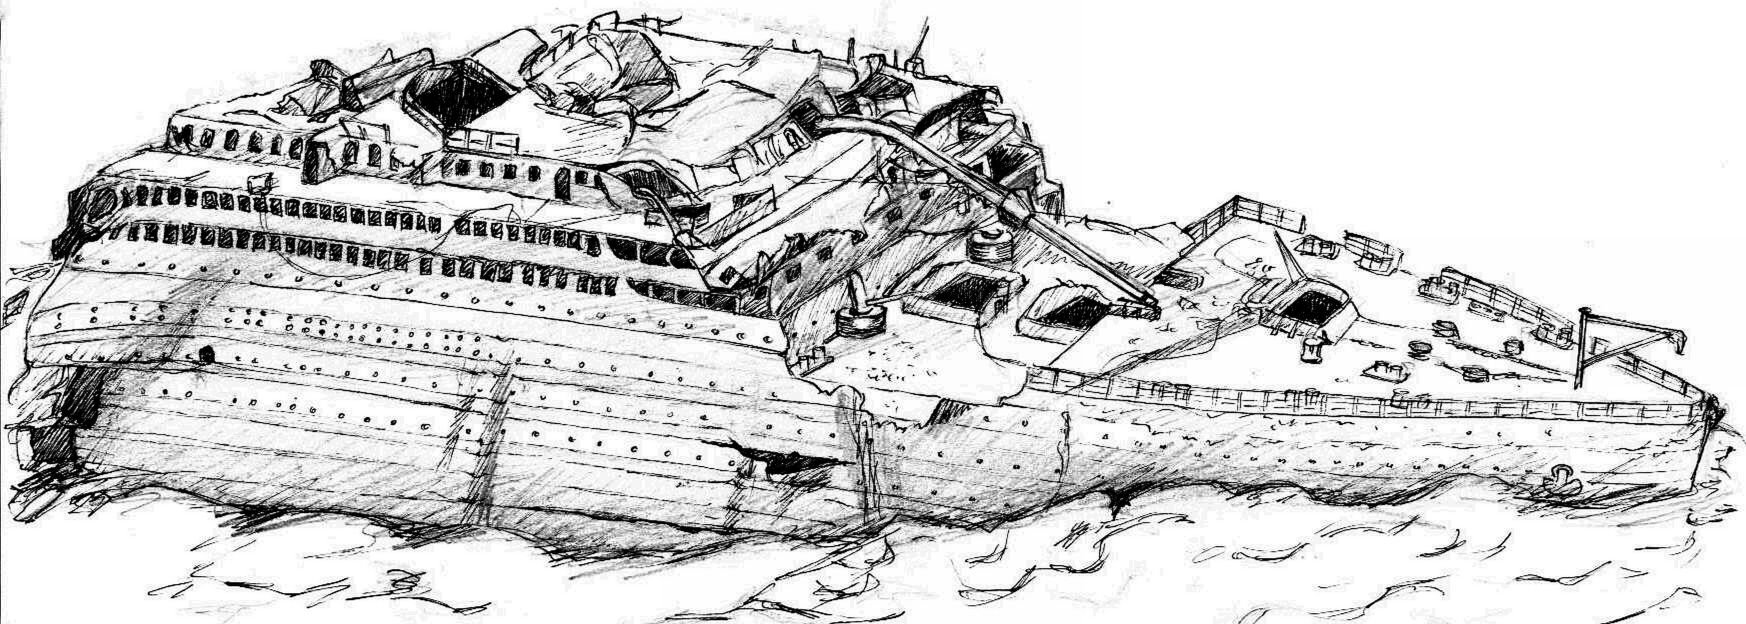 Titanic Rift #2